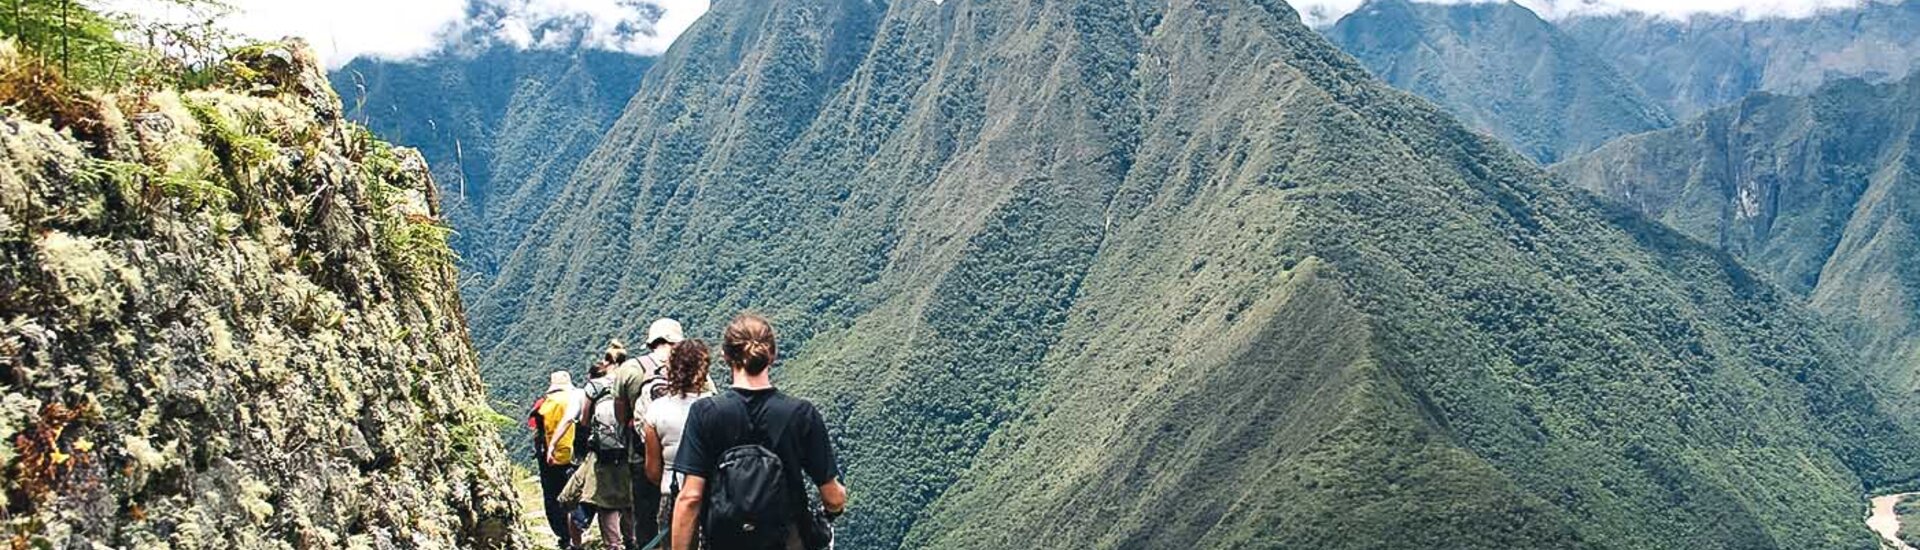 Wanderer auf dem Weg zum Machu Picchu über den Inka Trail